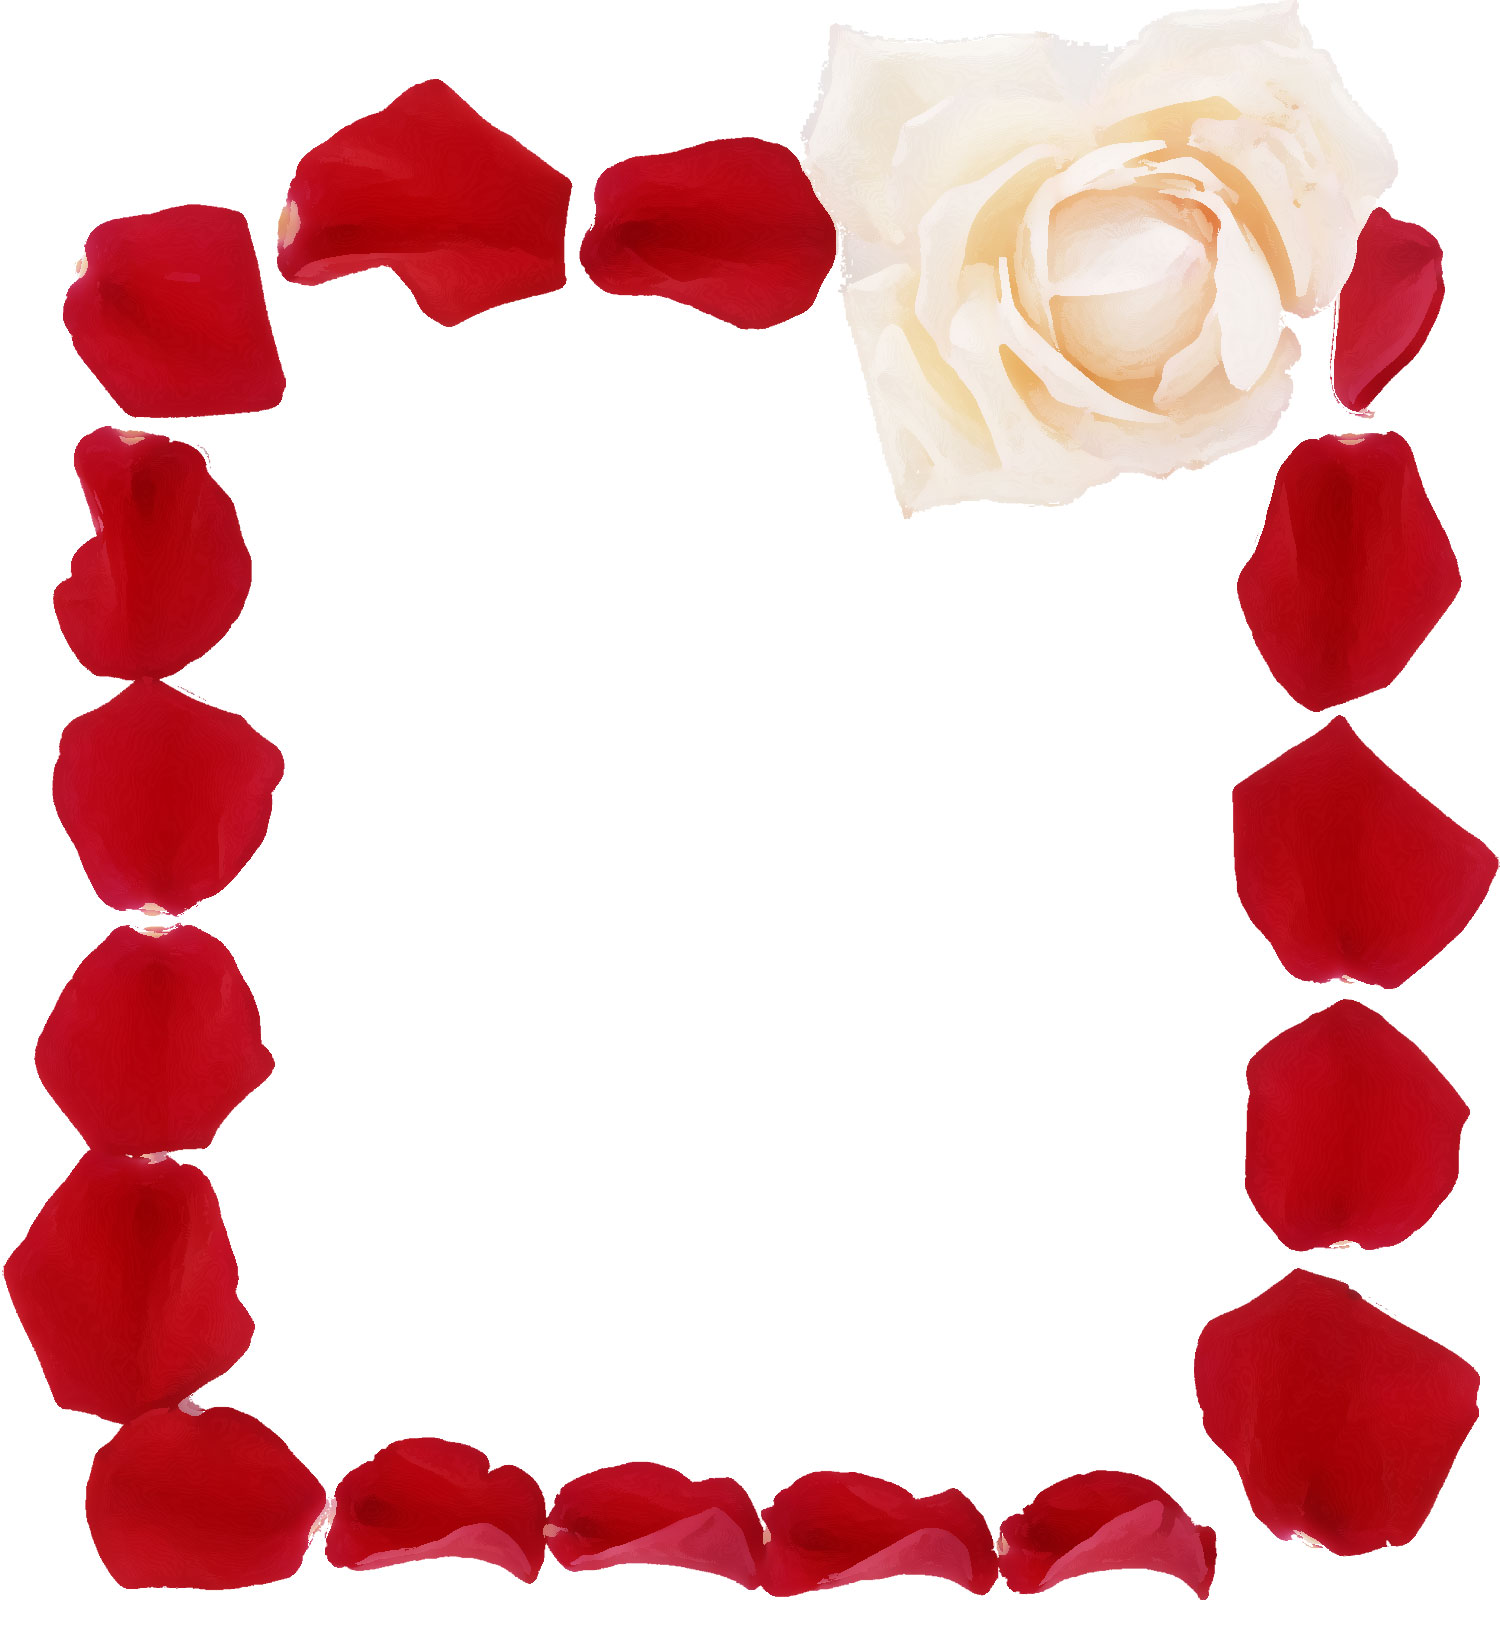 花のイラスト フリー素材 フレーム枠no 590 バラの花びら 赤白